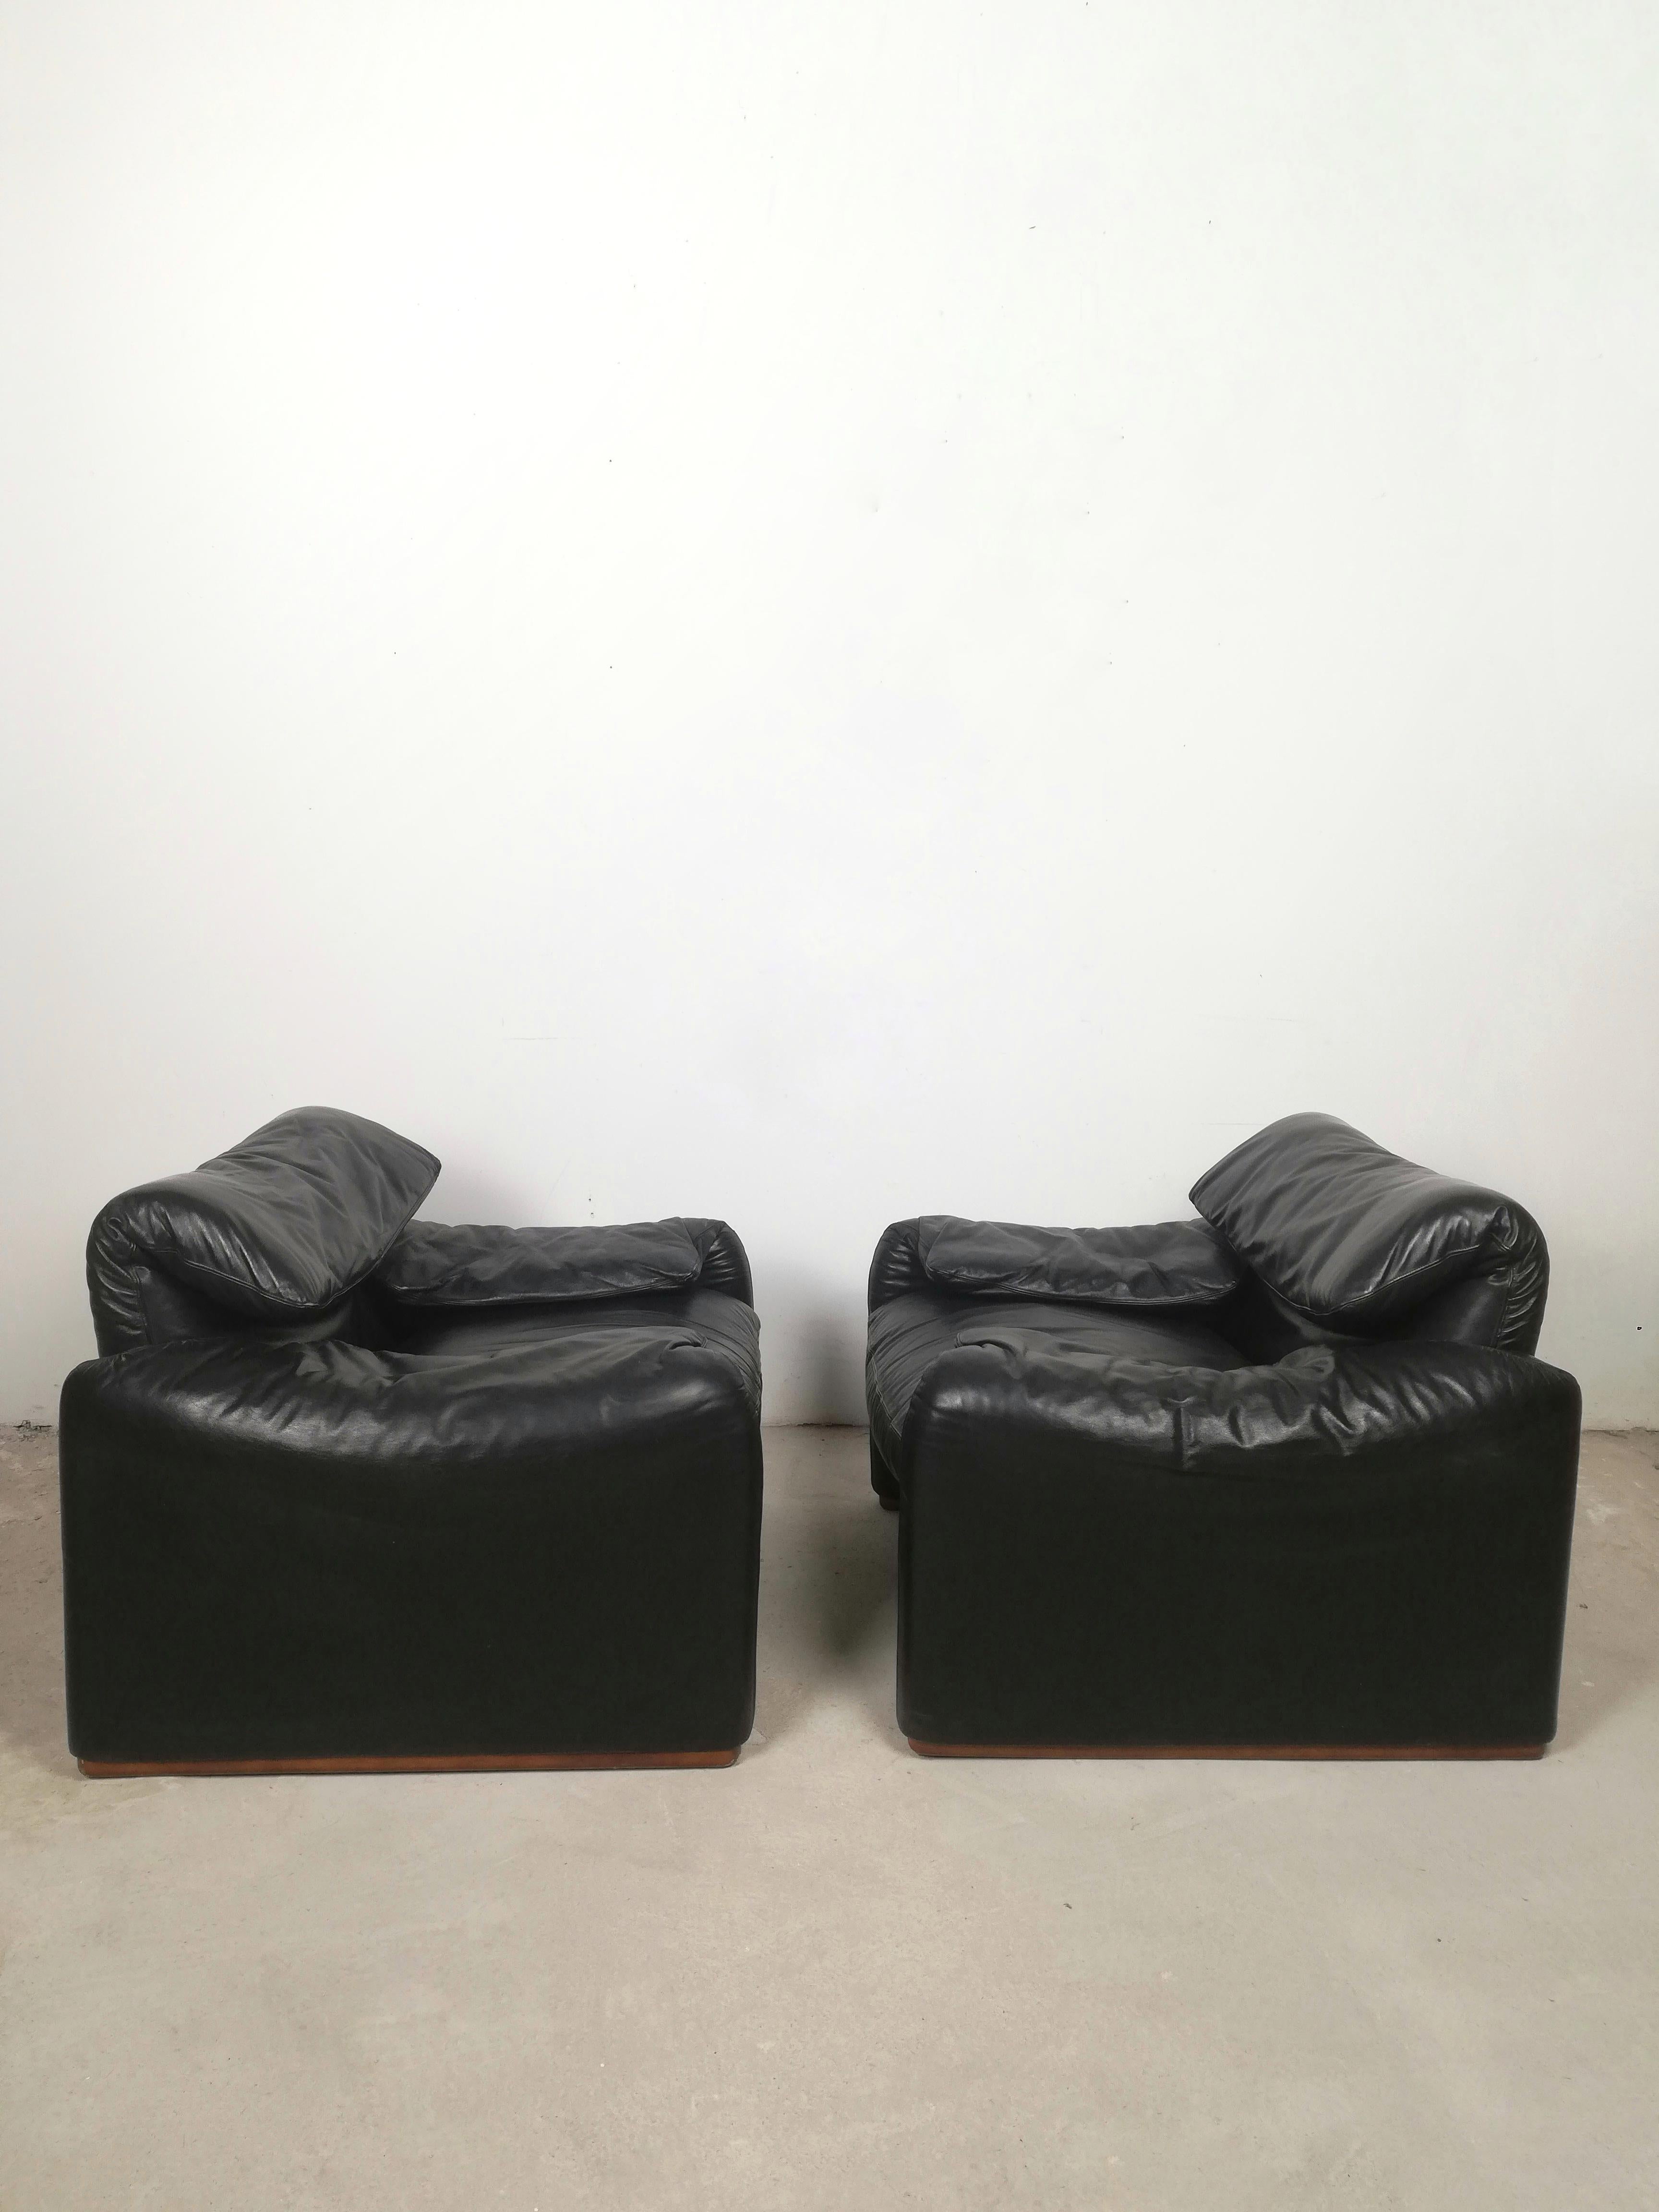 Ensemble de deux fauteuils Maralunga vintage en finition cuir noir.
Ces séries emblématiques ont reçu le Compasso d'Oro en 1973 et font aujourd'hui encore partie de la collection permanente du MOMA.
La série Maralunga combine le 